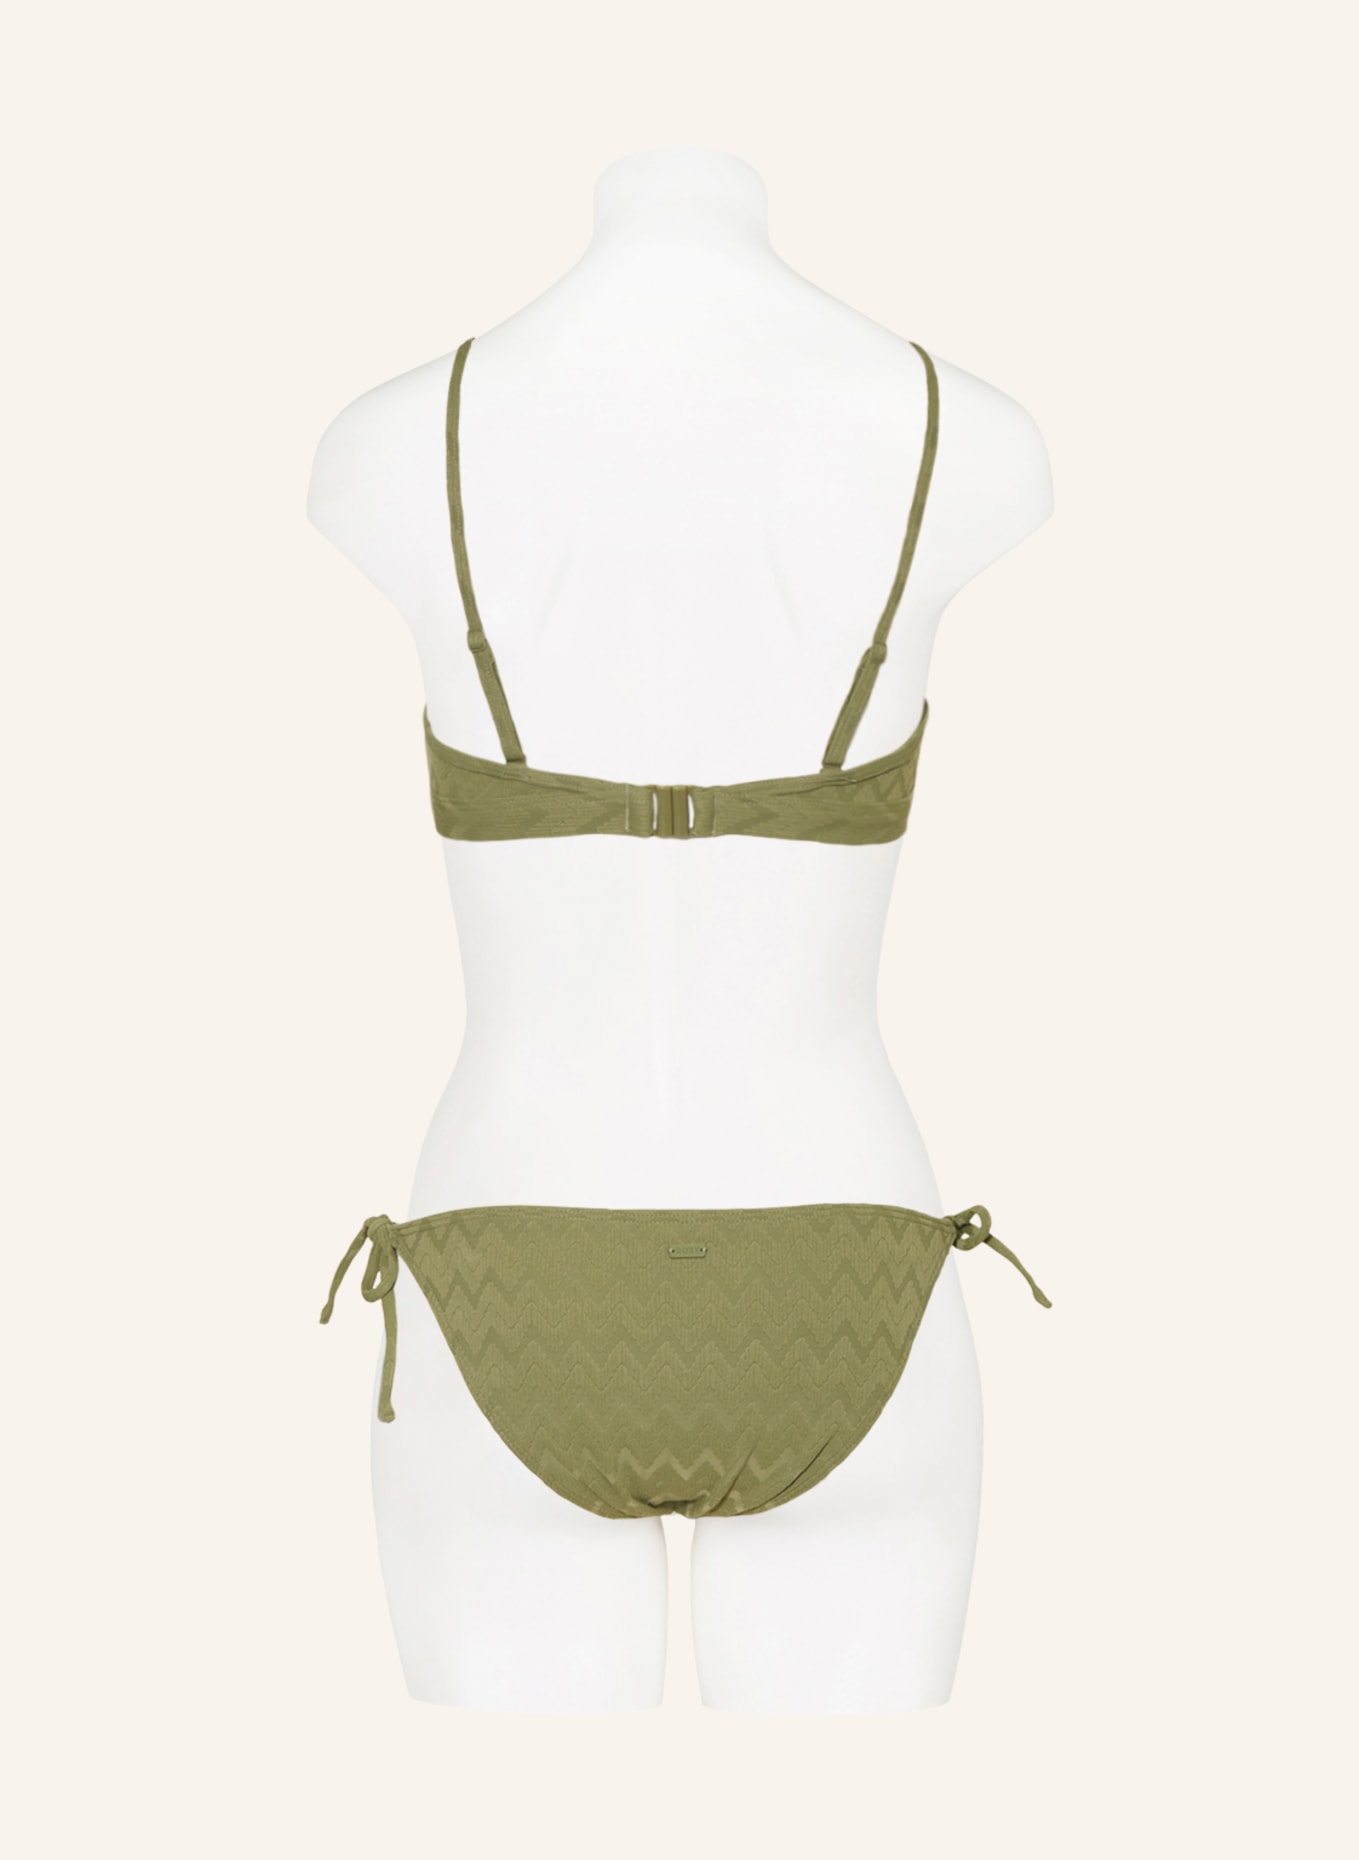 ROXY Bralette-Bikini-Top CURRENT COOLNESS, Farbe: OLIV (Bild 3)